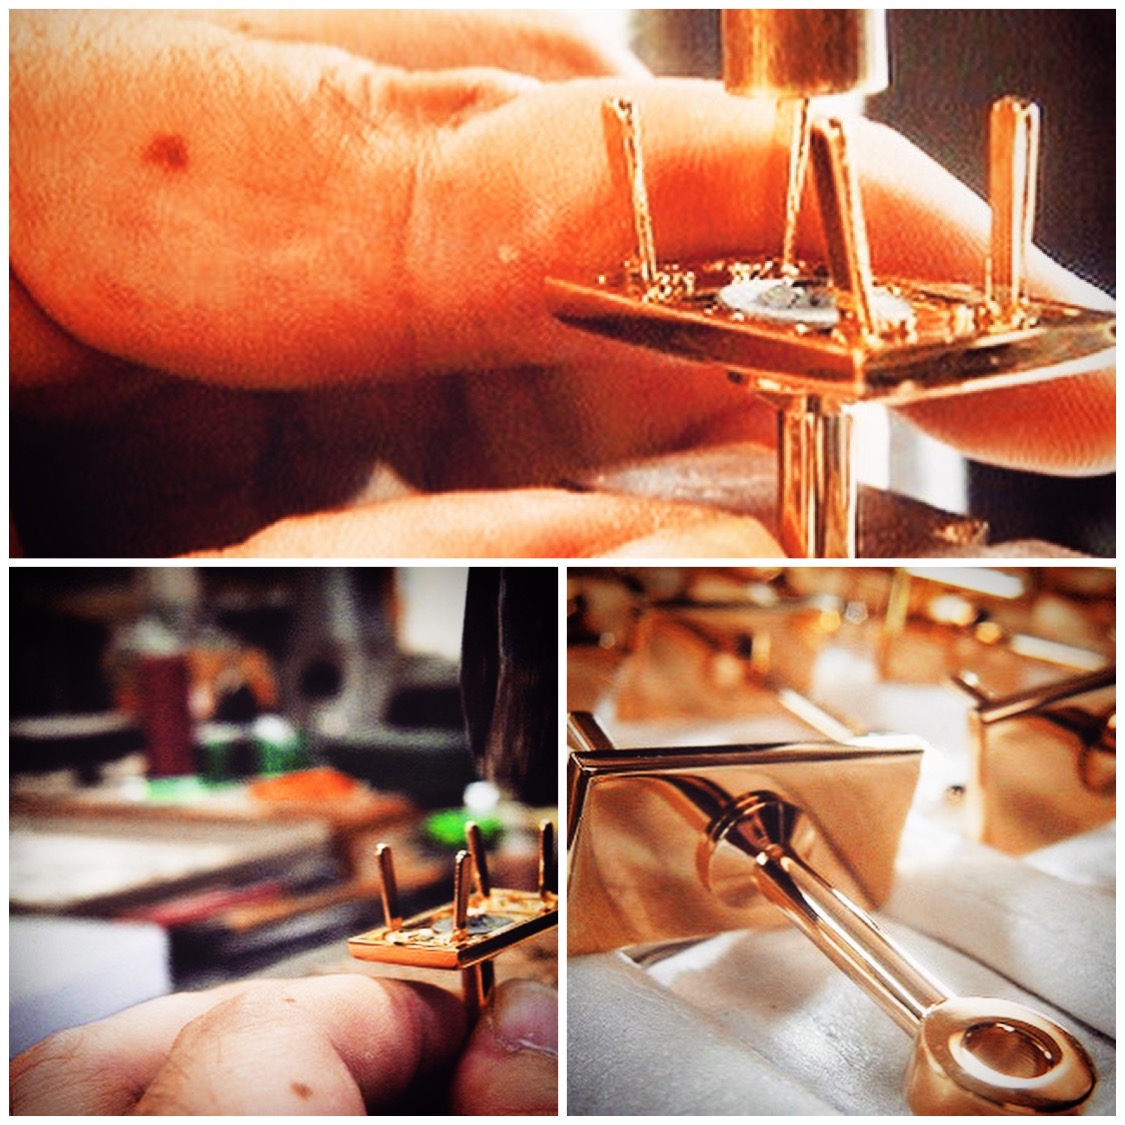 メタルハウスでは、オリジナル金具作成から、革の縫製、箱詰めまで、完全オーダーメイドでモノ作りのお手伝いを致します。